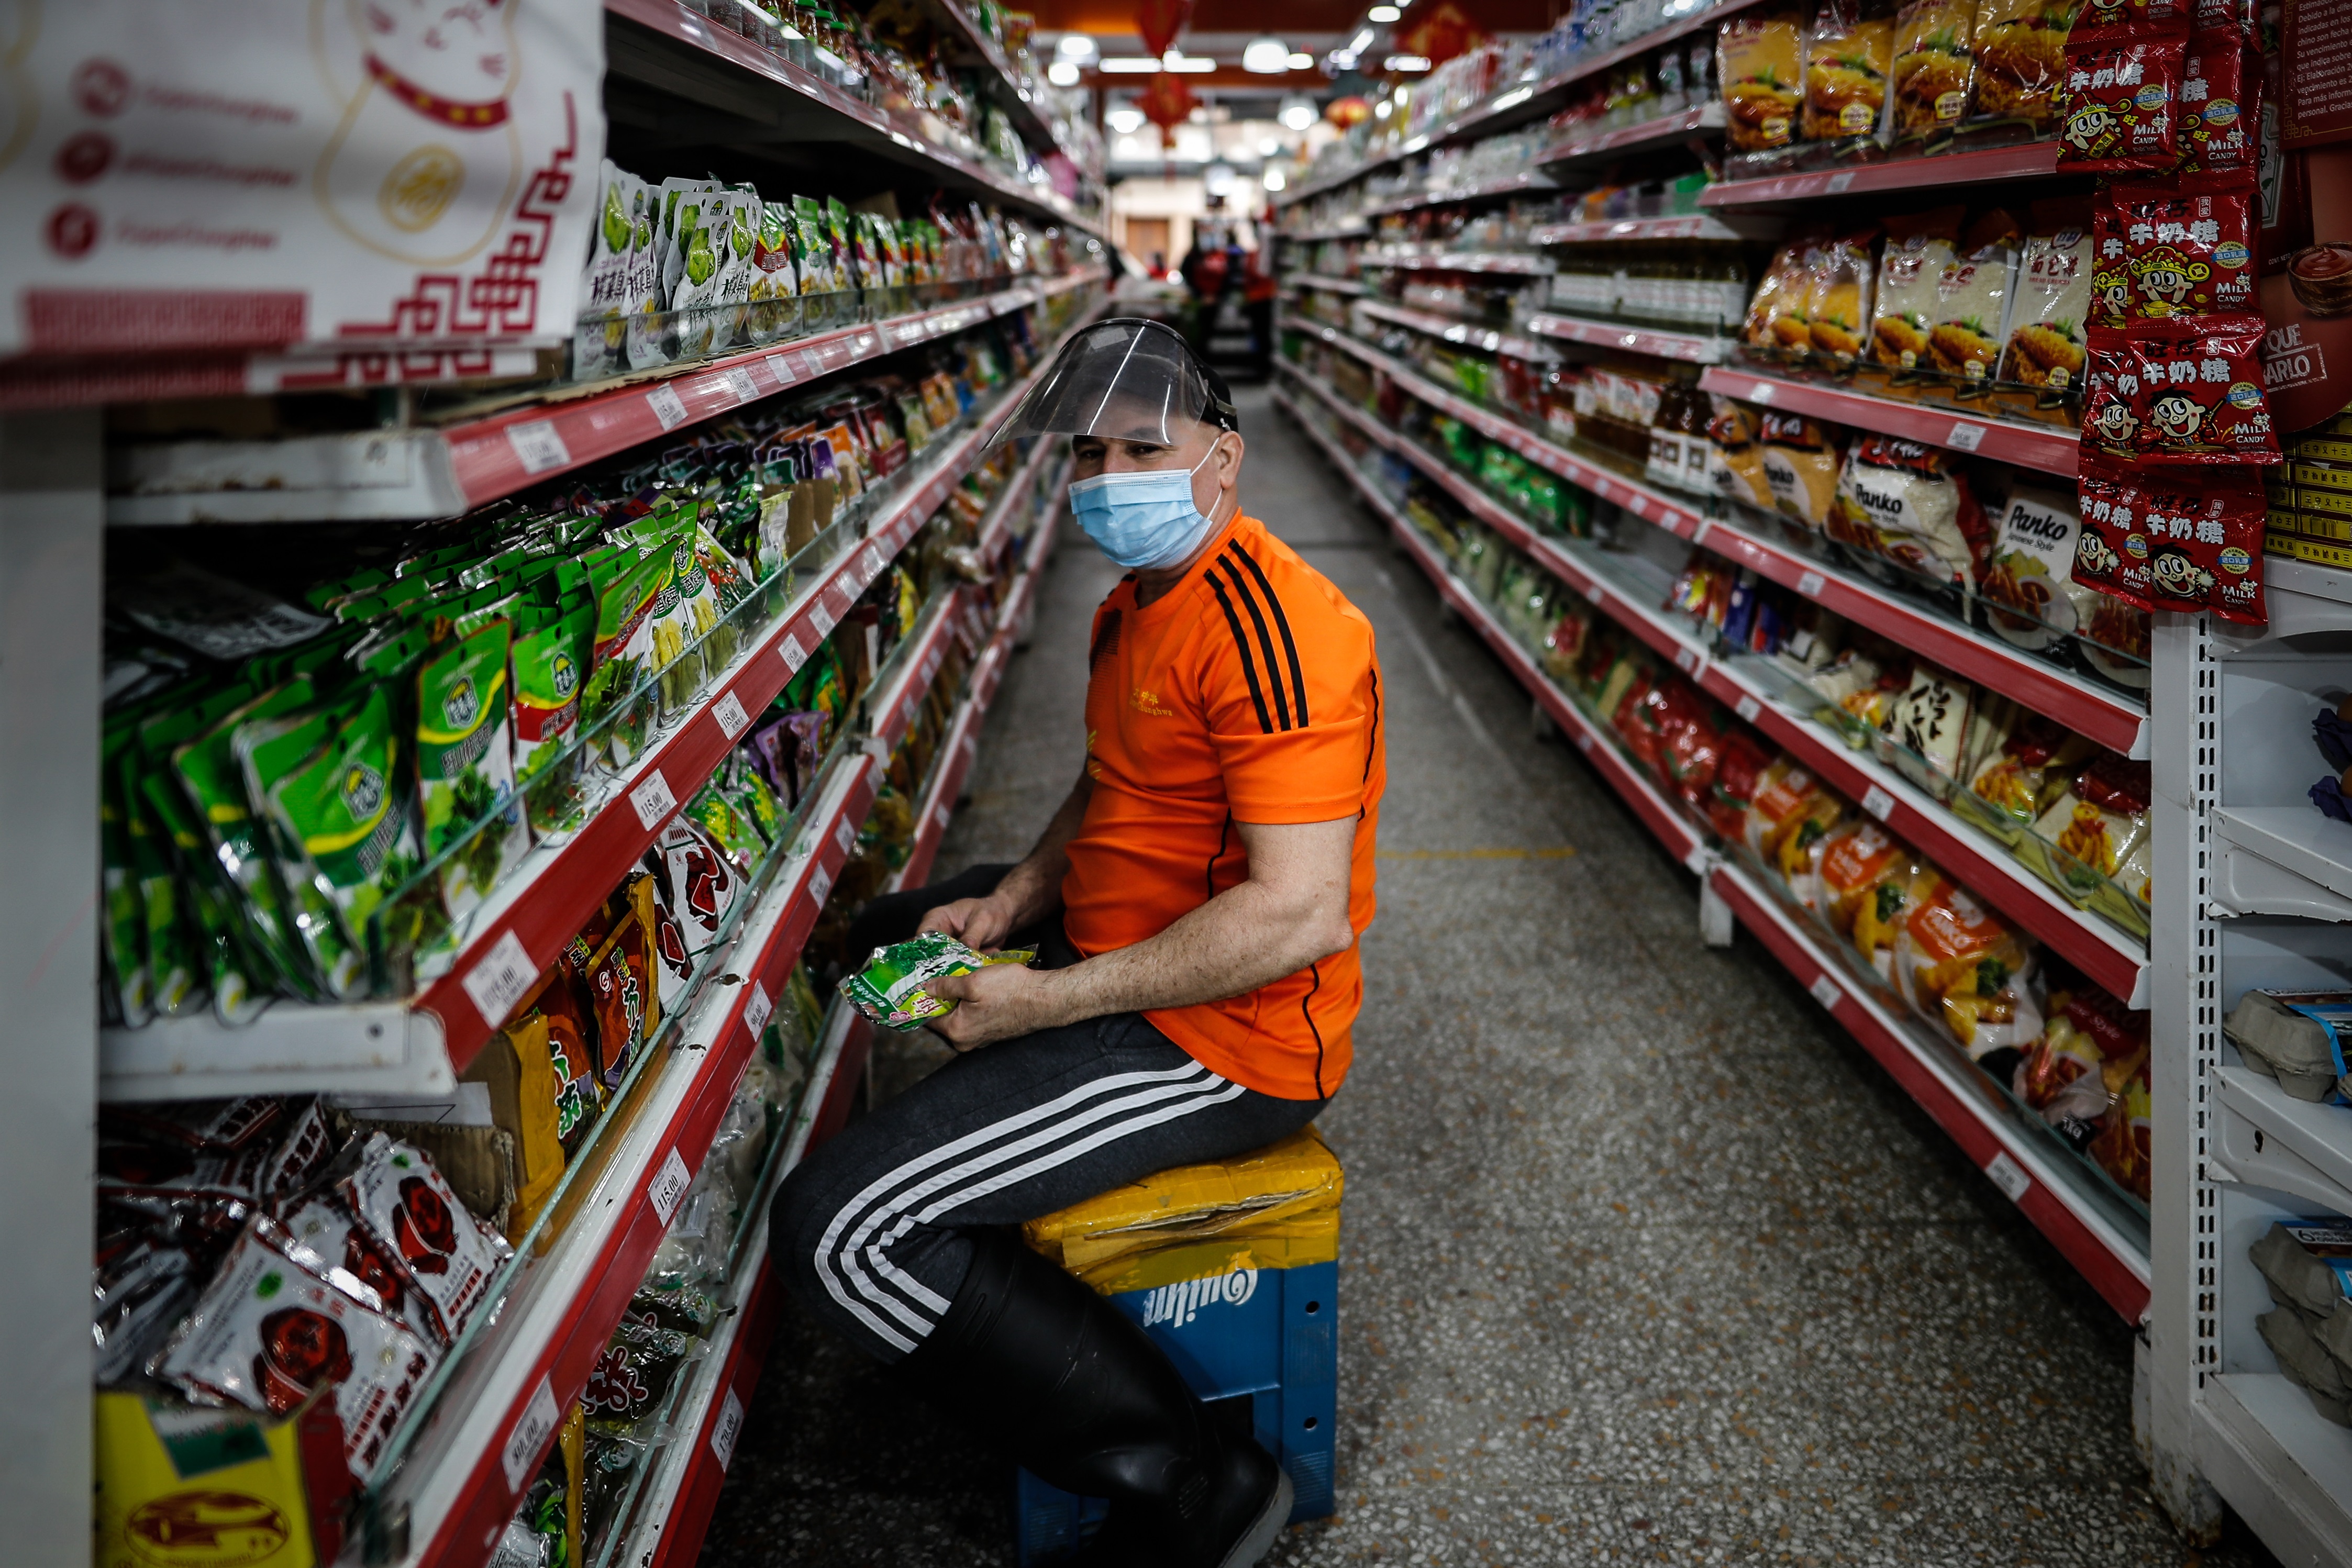 La inflación, el precio de los alquileres y la caída del consumo generaron un fuerte cierre de supermercados de origen chino